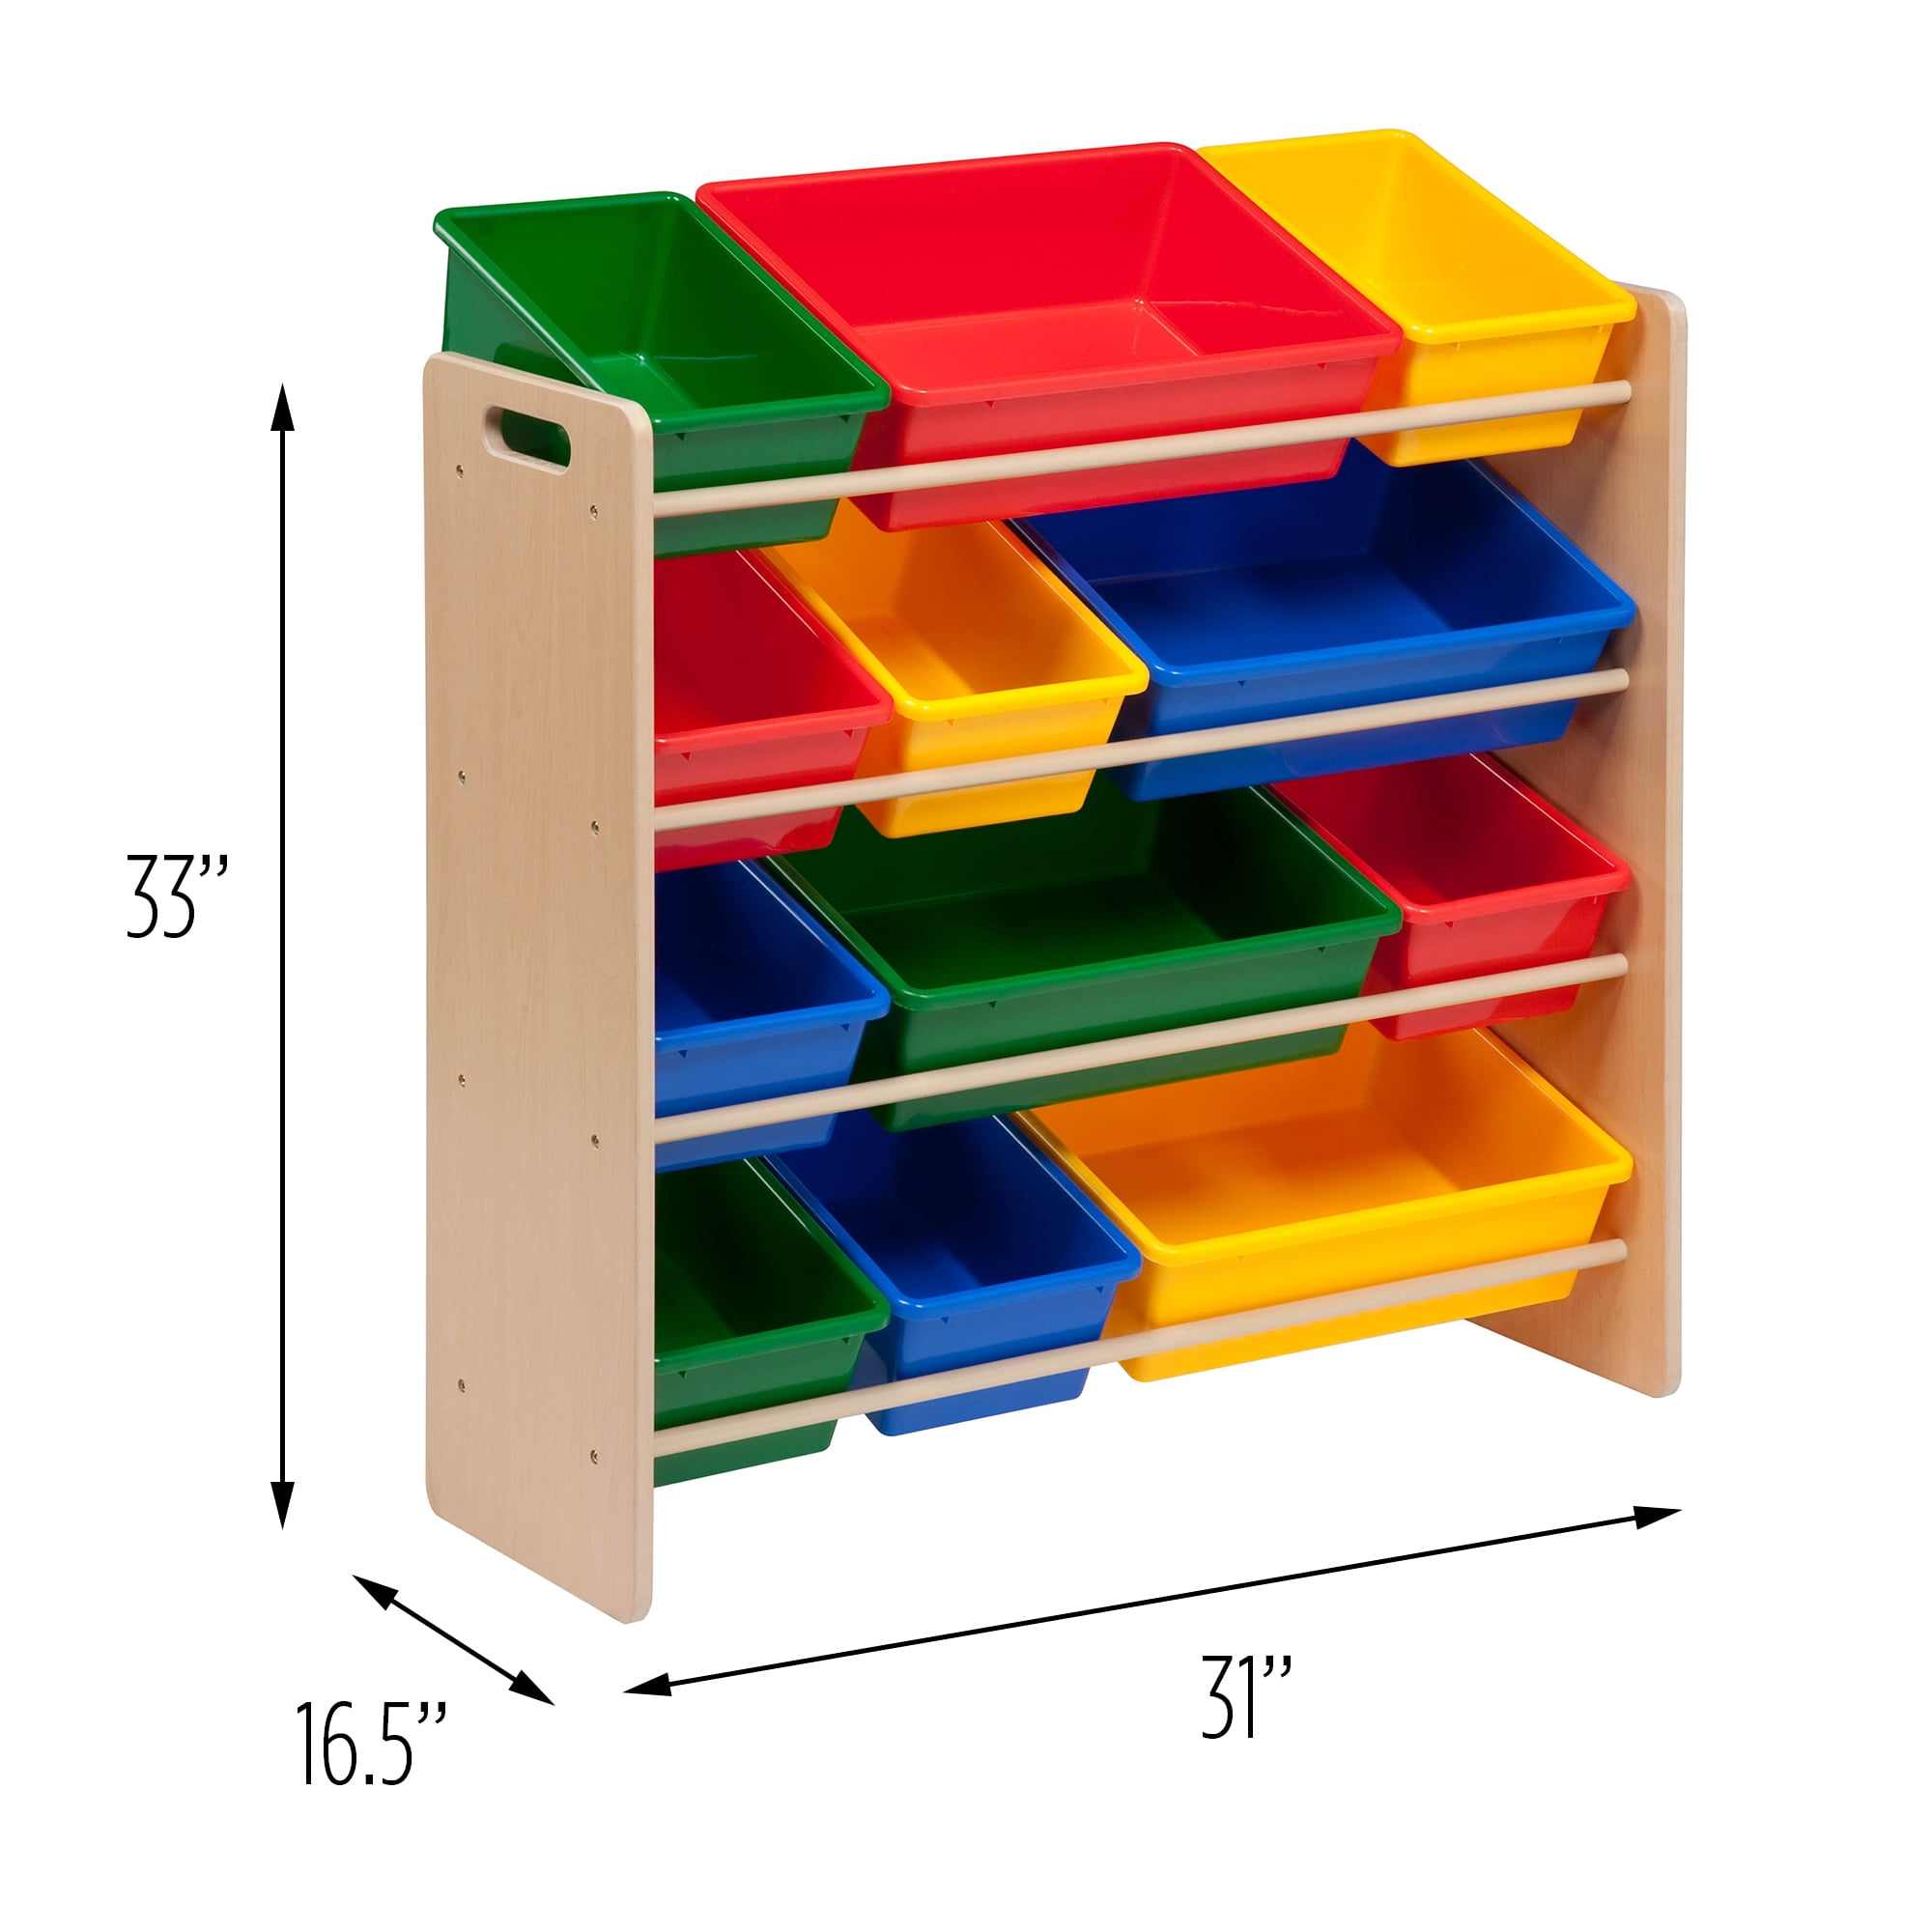 Shelf Bin Organizer - 36 x 12 x 75 with 8 1/2 x 12 x 4 Blue Bins